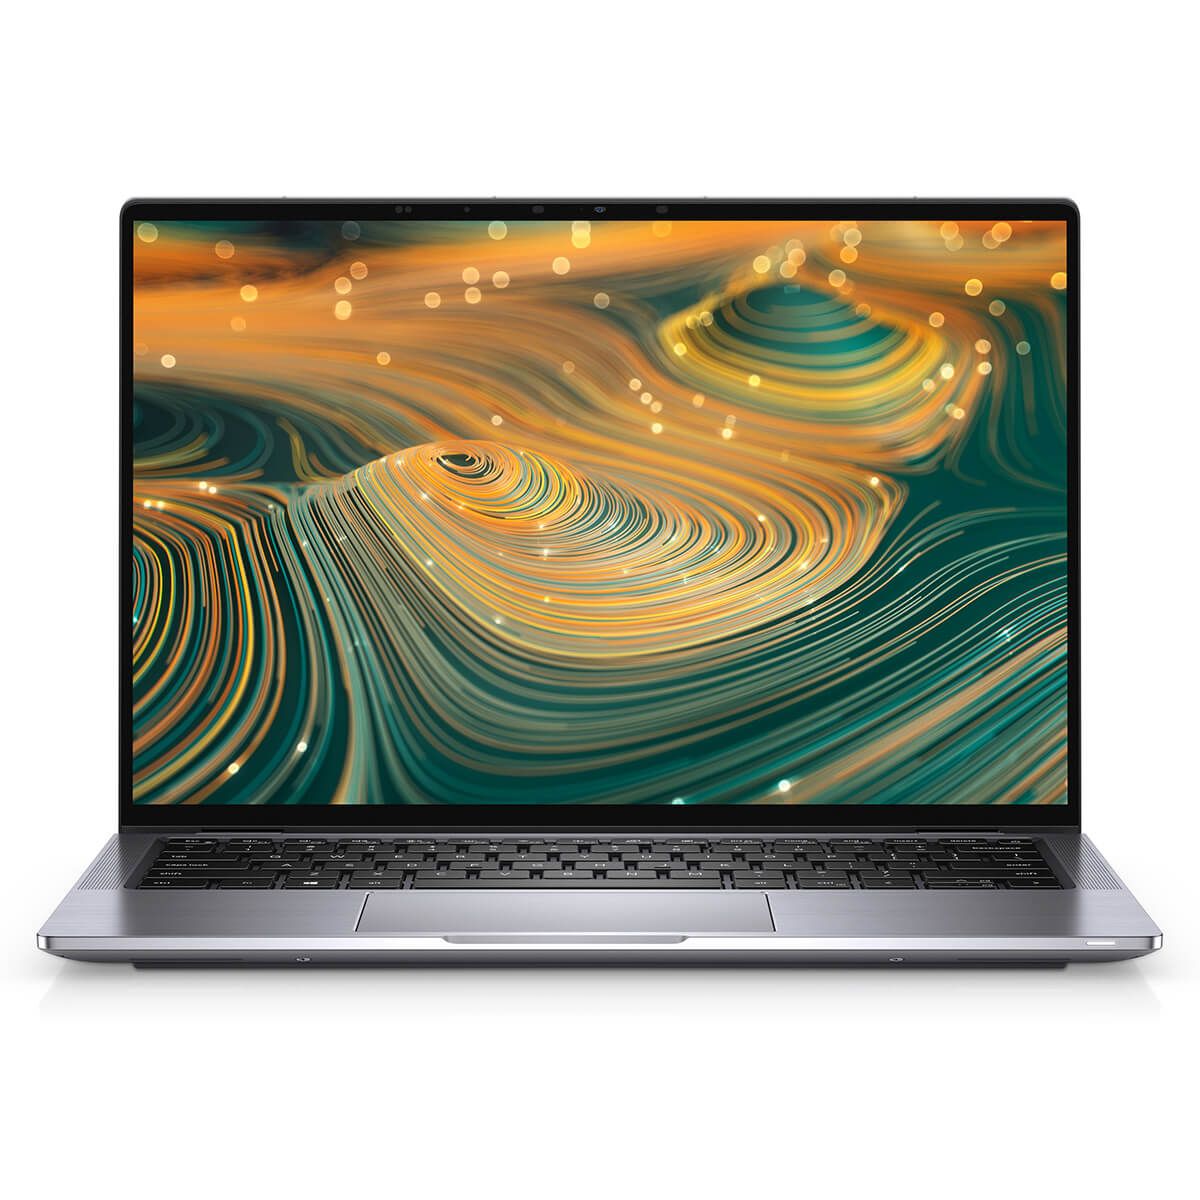 Laptop Dell Latitude 7420 2in1 Vỏ nhôm trắng Core i7 1175G7 Ram 16GB SSD 512GB FHD Touch 360 giá rẻ Uy tín nhất TPHCM title=